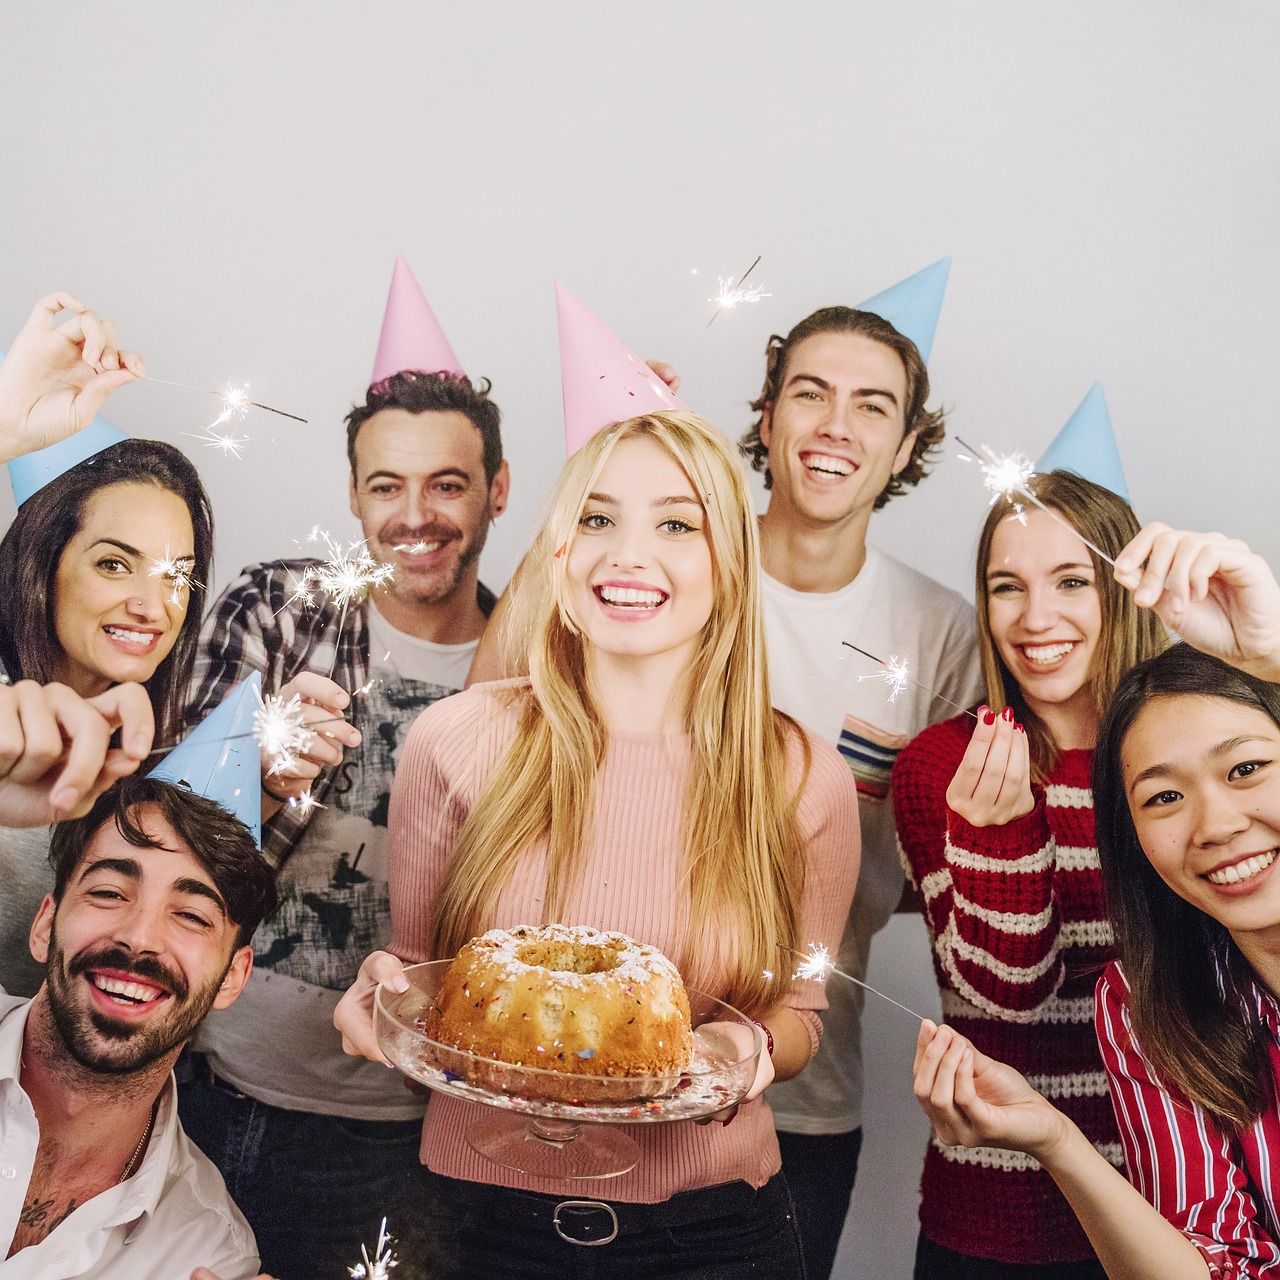 Życzenia urodzinowe – co zrobić, aby nie były banalne?